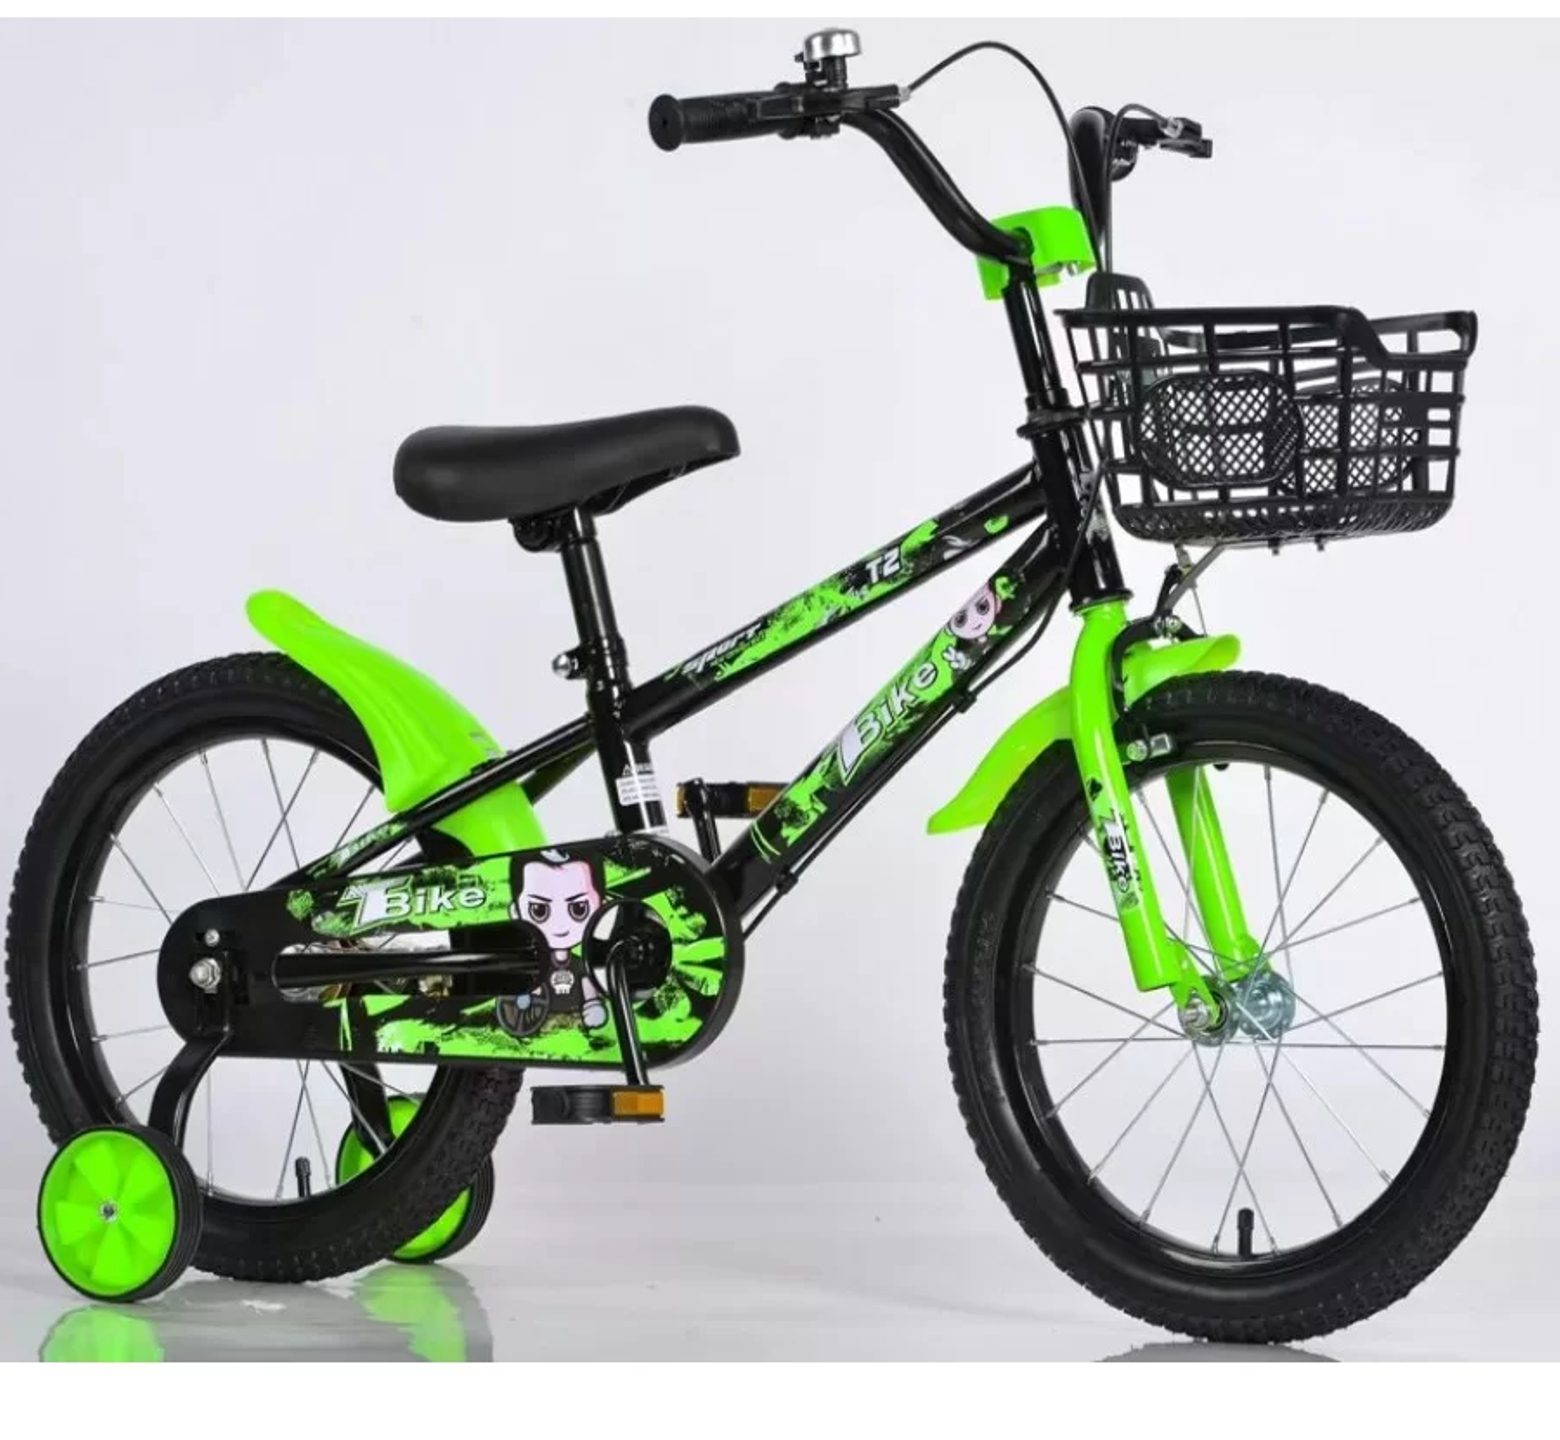 Ποδήλατο bmx T2 12 - 16 ιντσών με καλάθι σε μαύρο πράσινο χρώμα